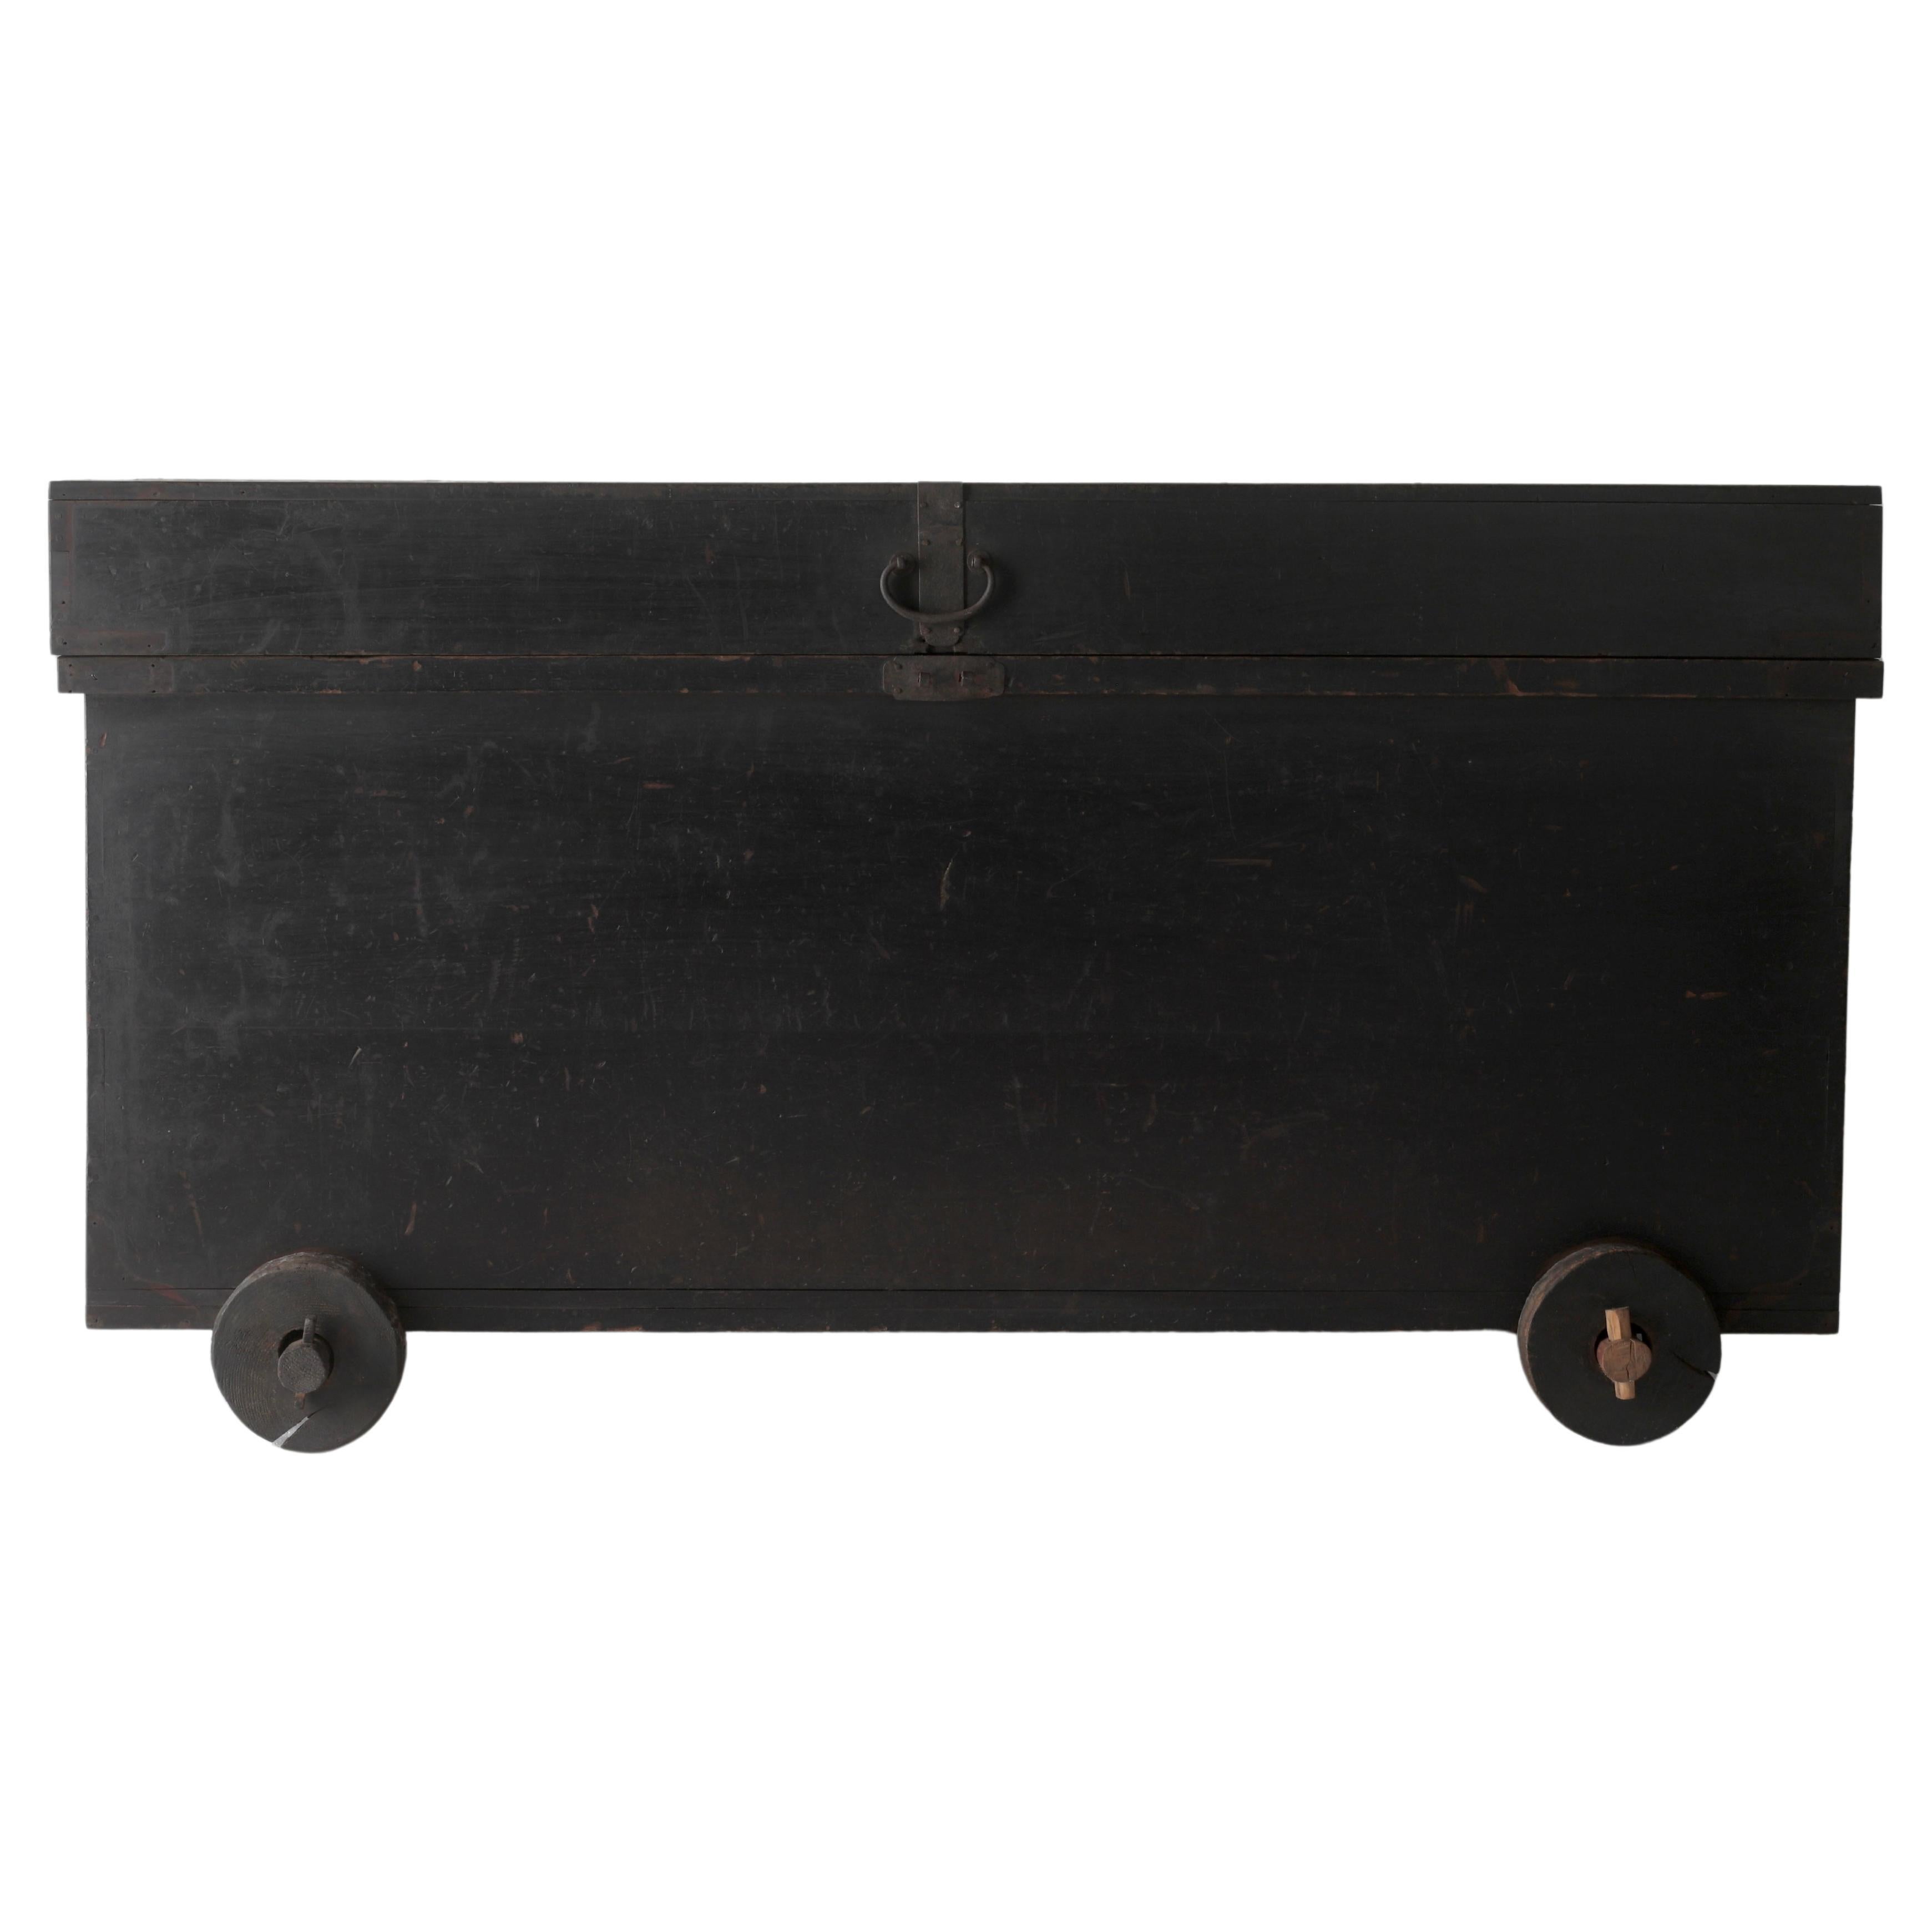 Japanese Antique Black Tansu / Cabinet Sideboard / 1860-1900s WabiSabi For Sale